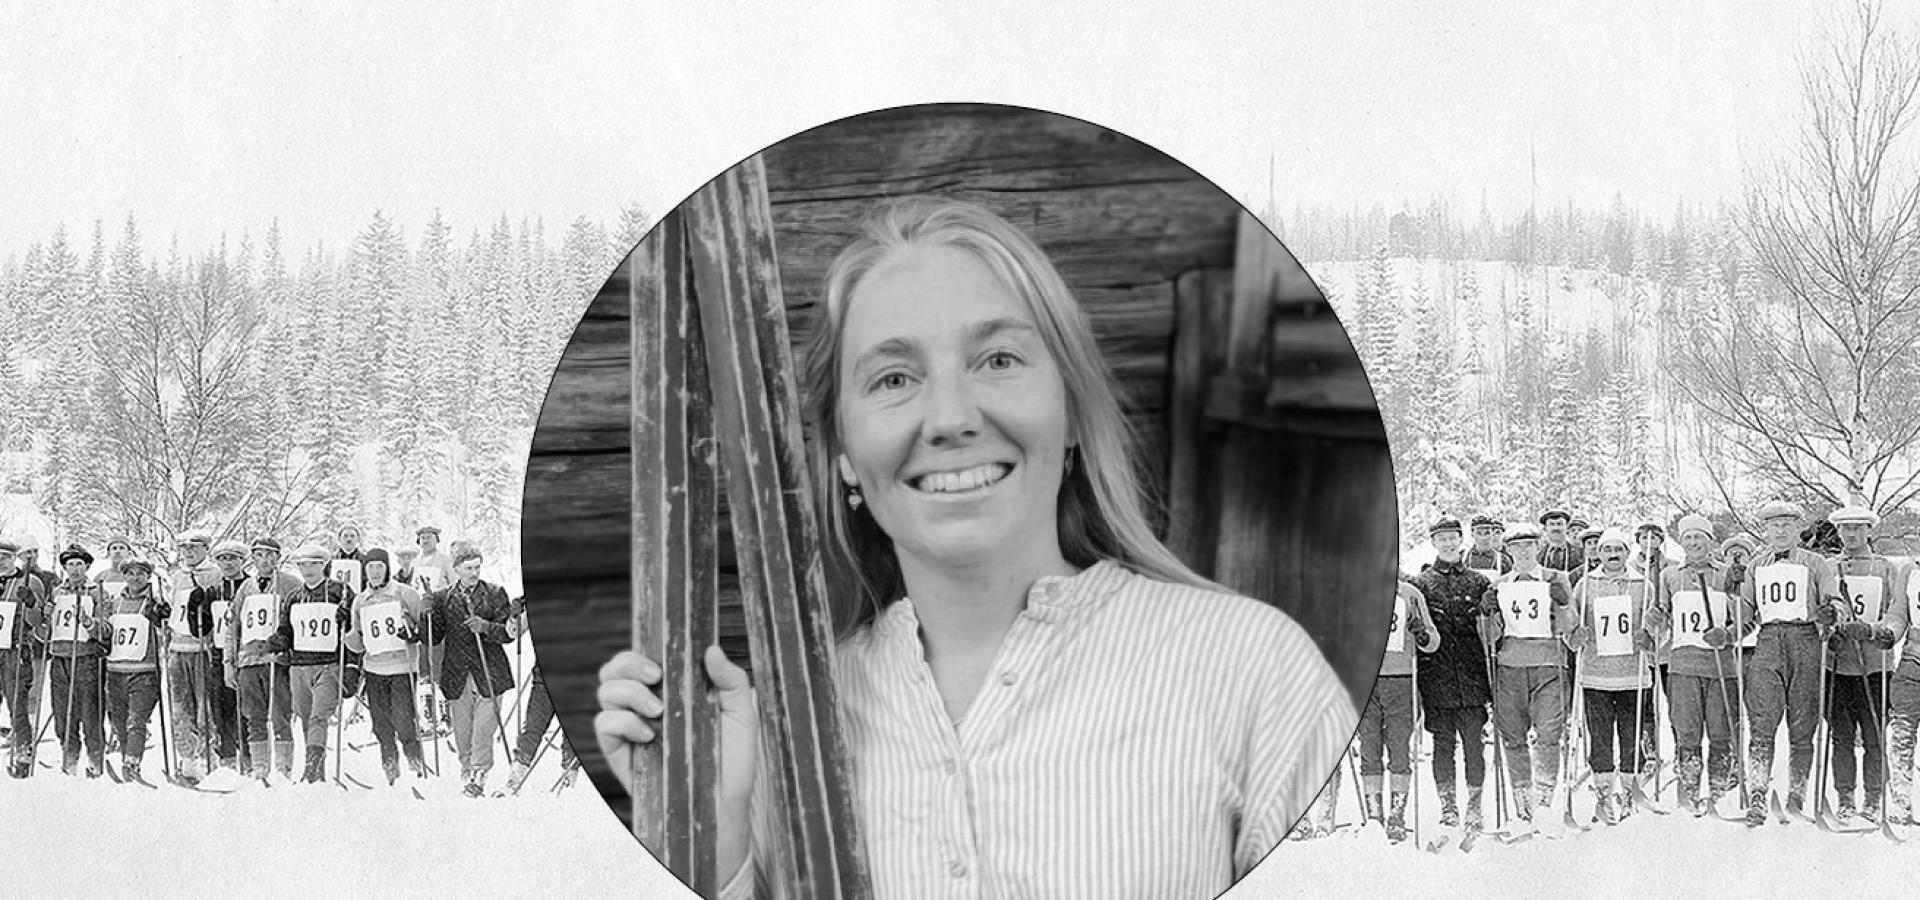 Emmalina Mattsson håller i träskidor, som behövs för Vasaloppets Jubileumsvasan.